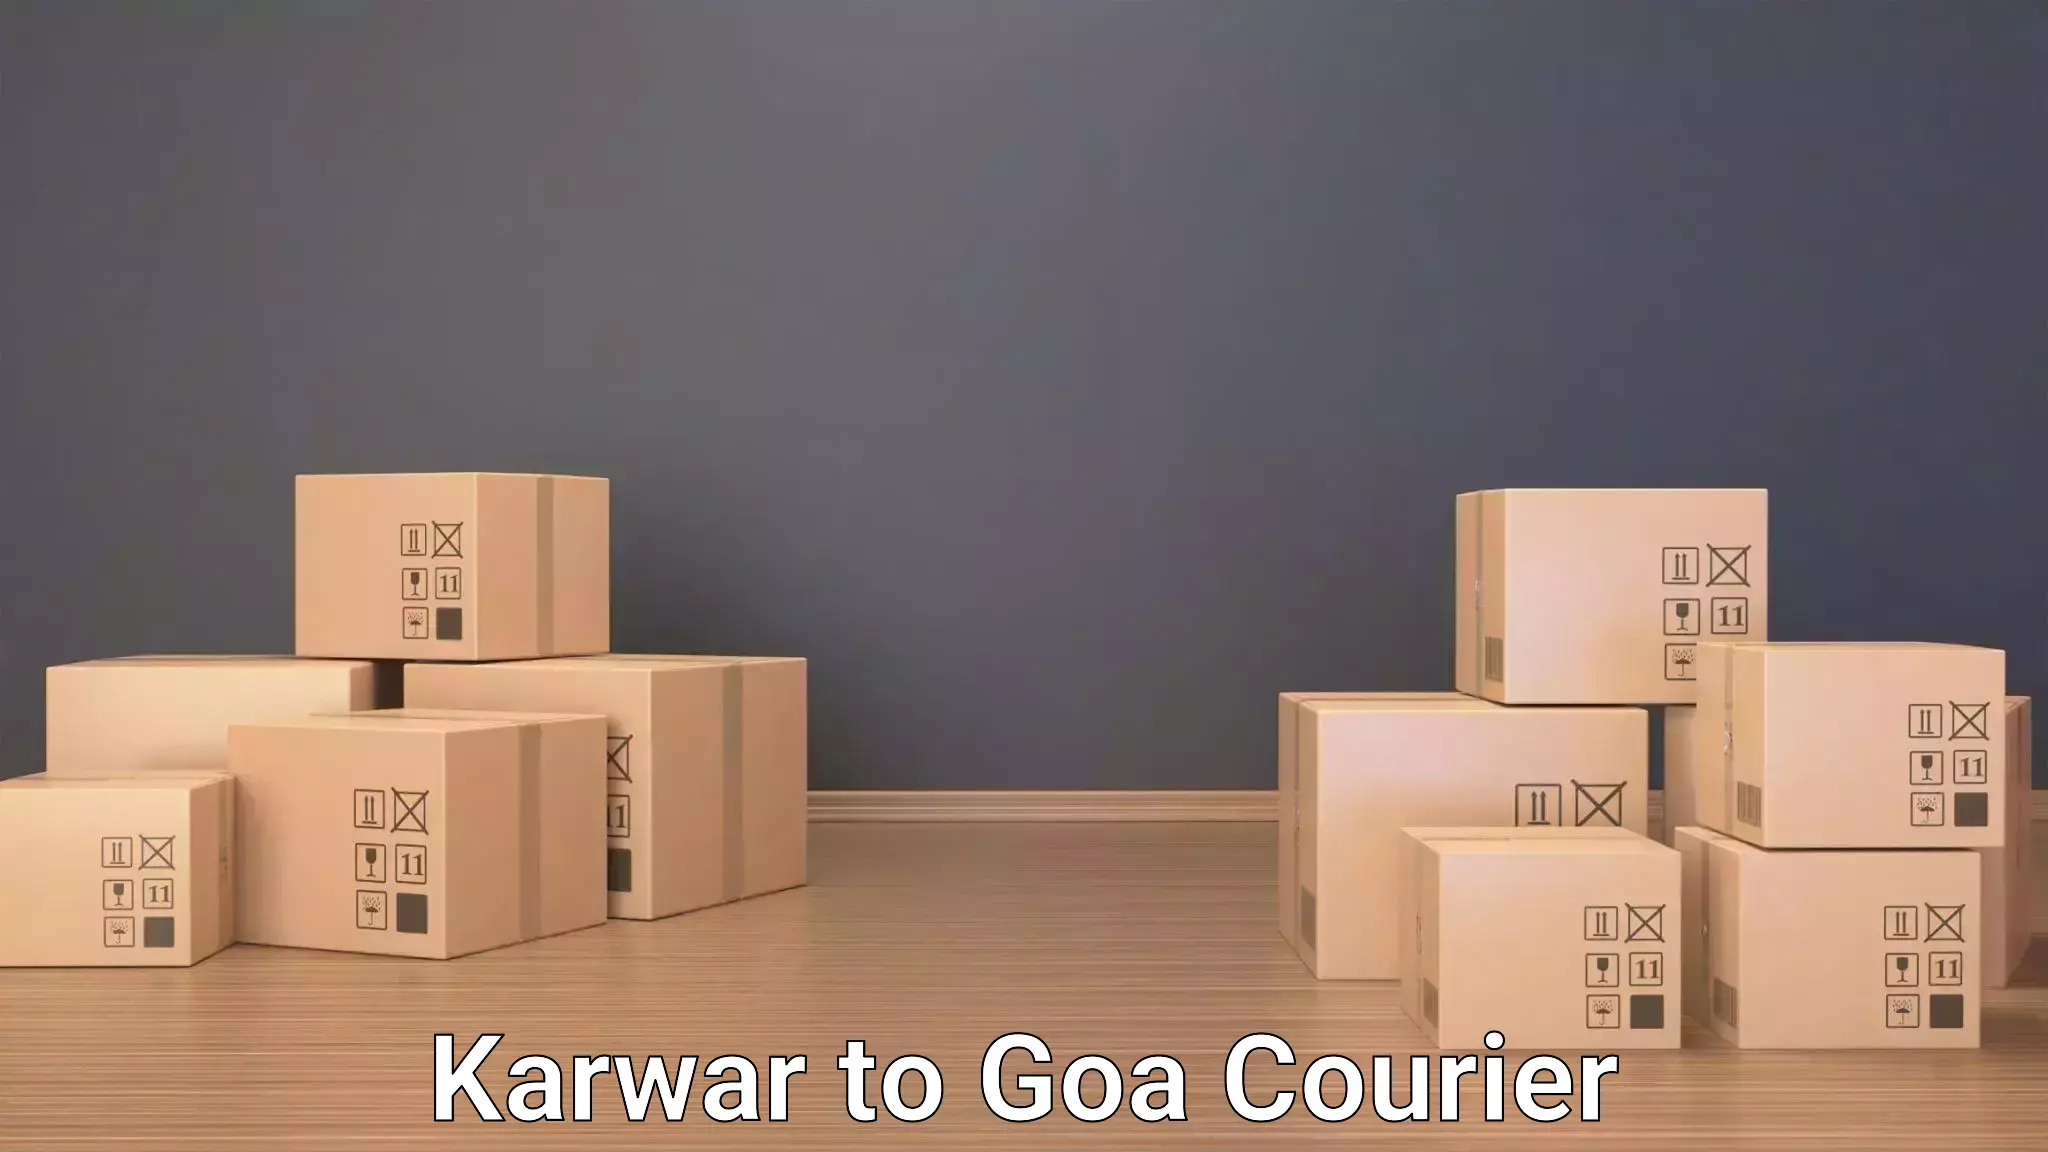 Luggage transport schedule Karwar to Ponda